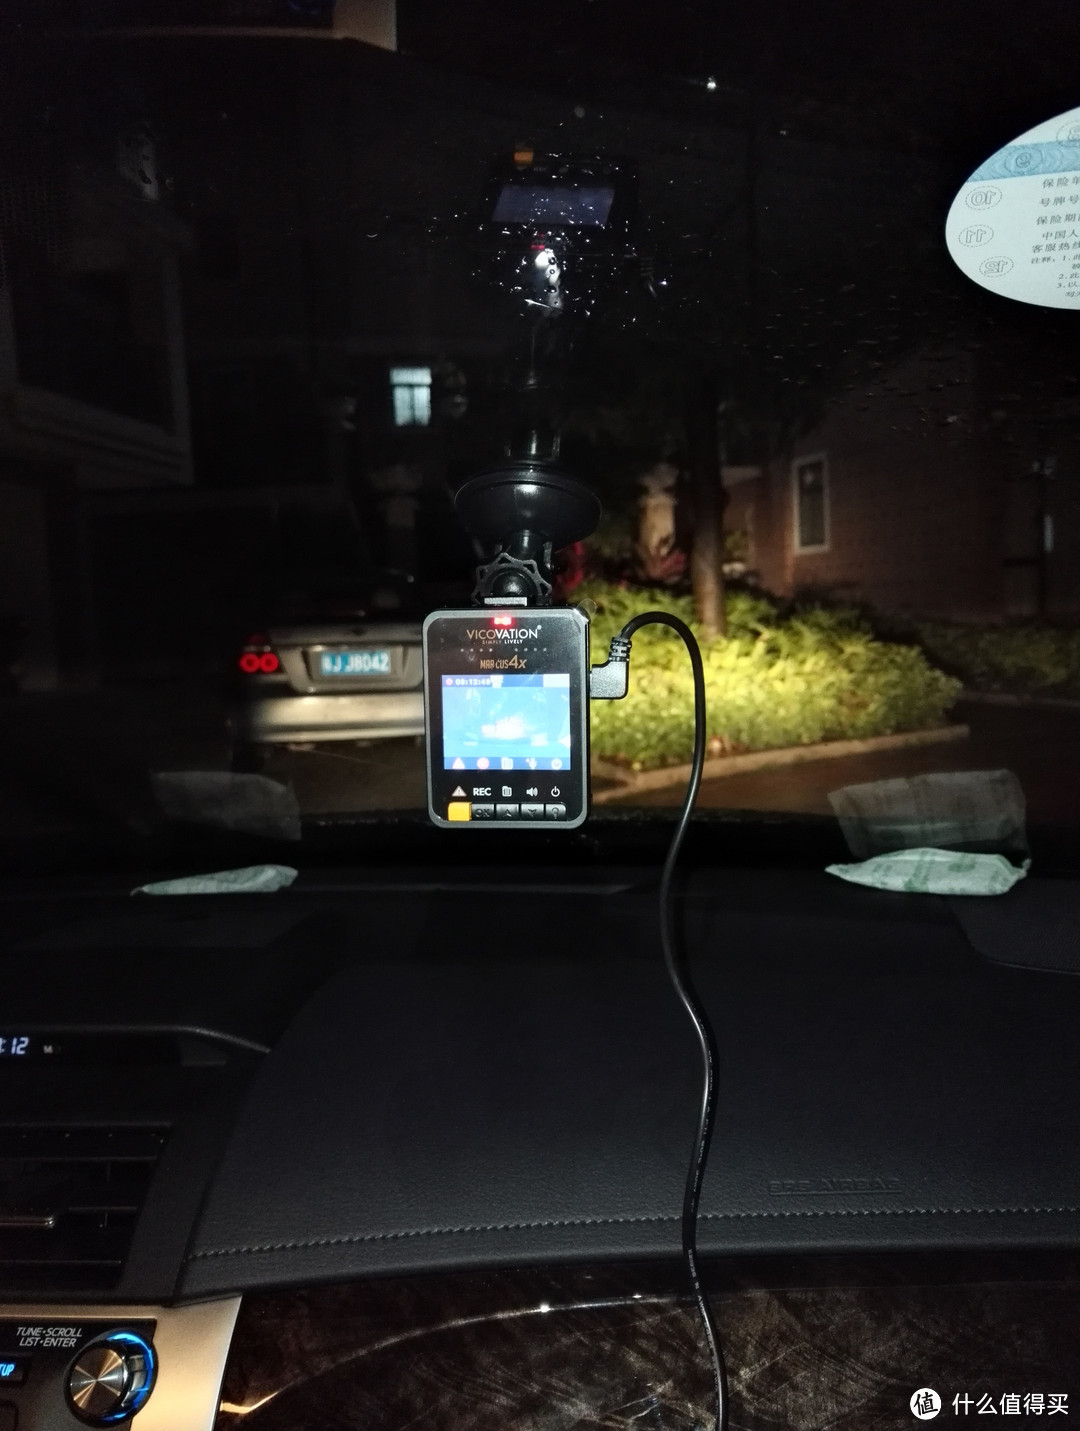 晒晒自装的行车记录仪——视连科Vico Marcus4X和配件GPS、偏光镜